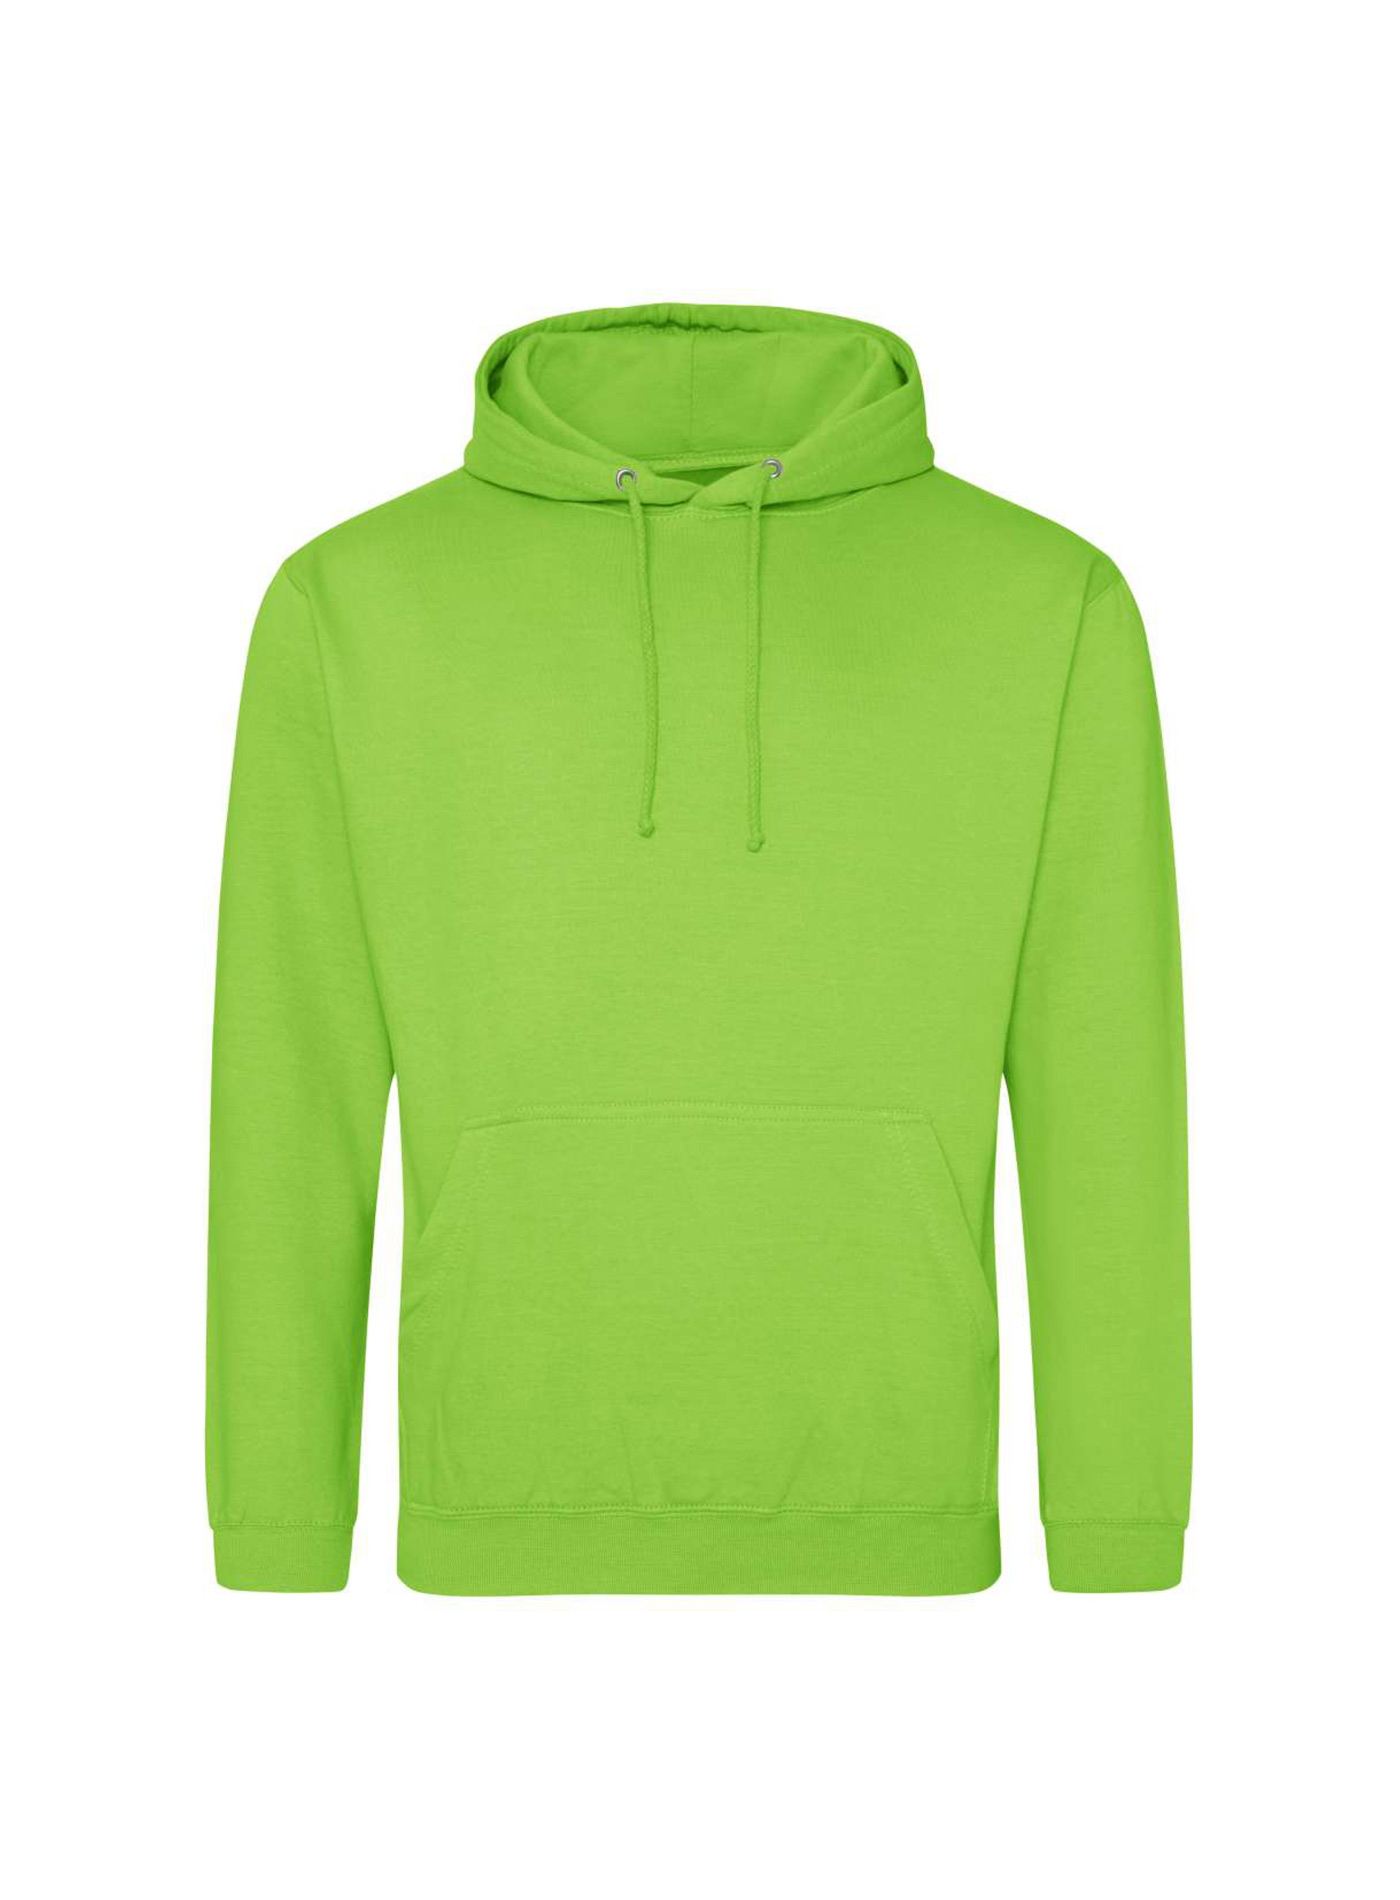 Mikina s kapucí unisex Just Hoods - Neonová zelená XXL